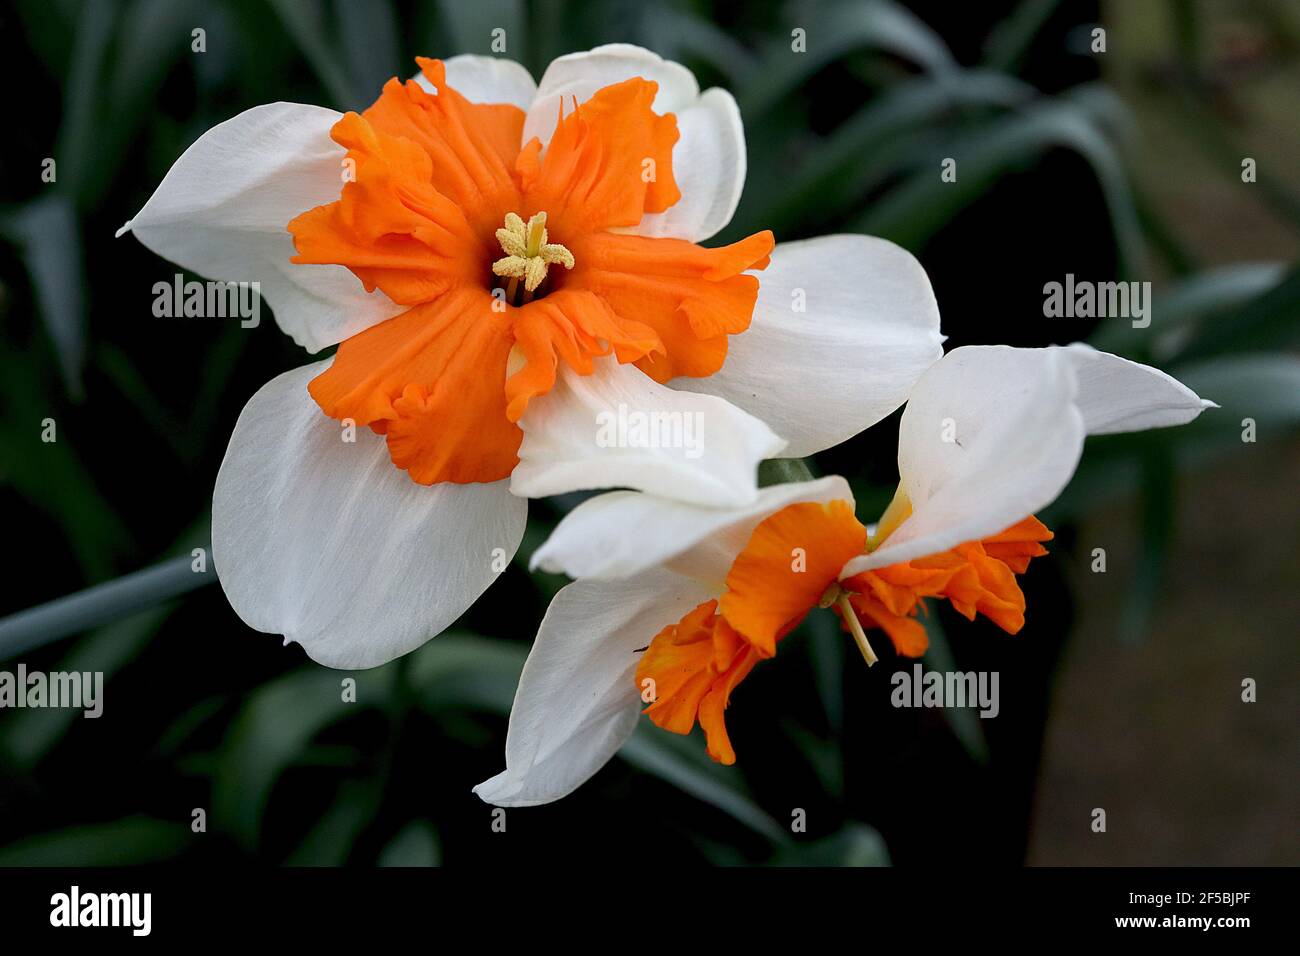 Narcissus ‘Orangerie’ Divisione 11a colletto a coppetta doppia Daffodils, Orangerie daffodil - petali bianchi e coppetta spaccata d’arancia, marzo, Inghilterra, Regno Unito Foto Stock